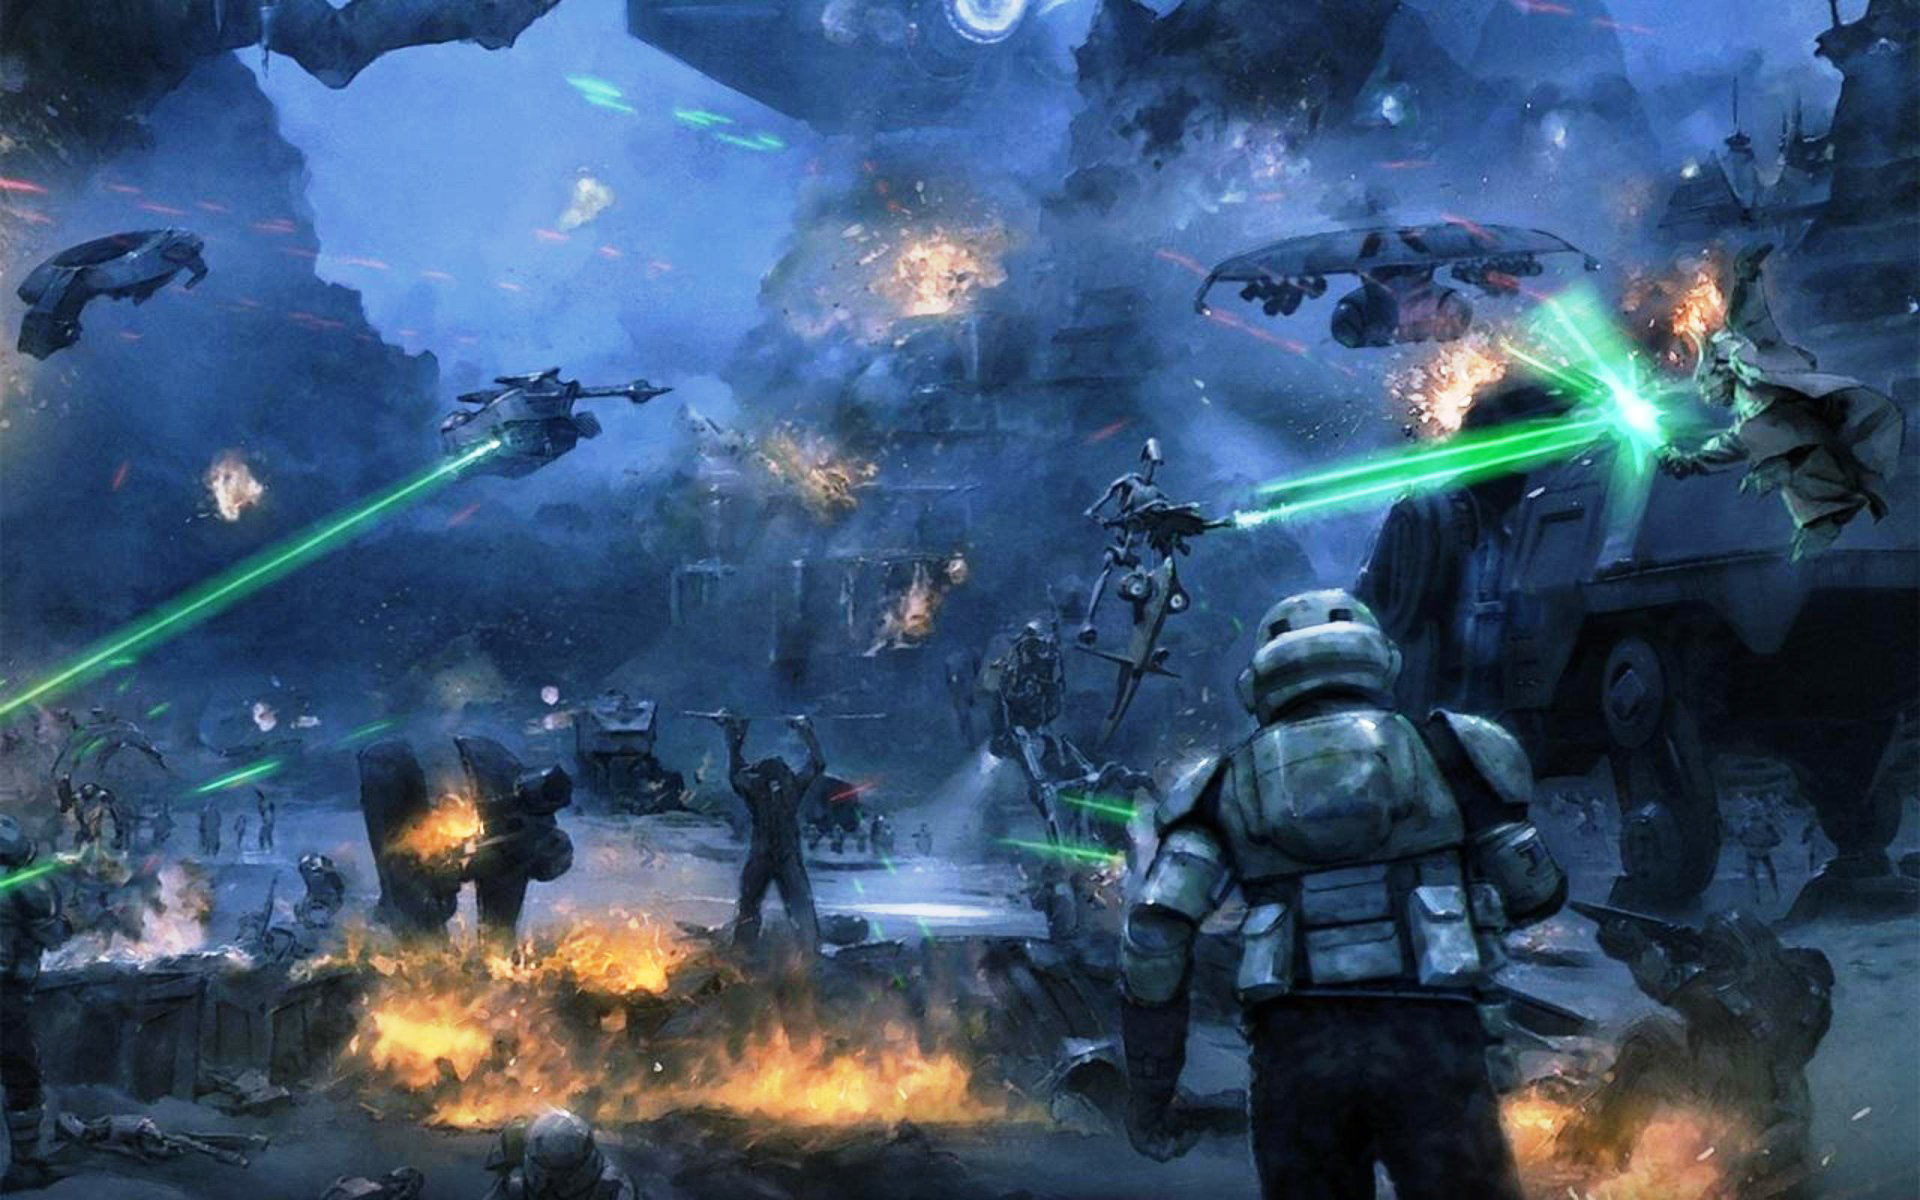 droid gunship, kashyyyk (star wars), at te, sci fi Square Wallpapers